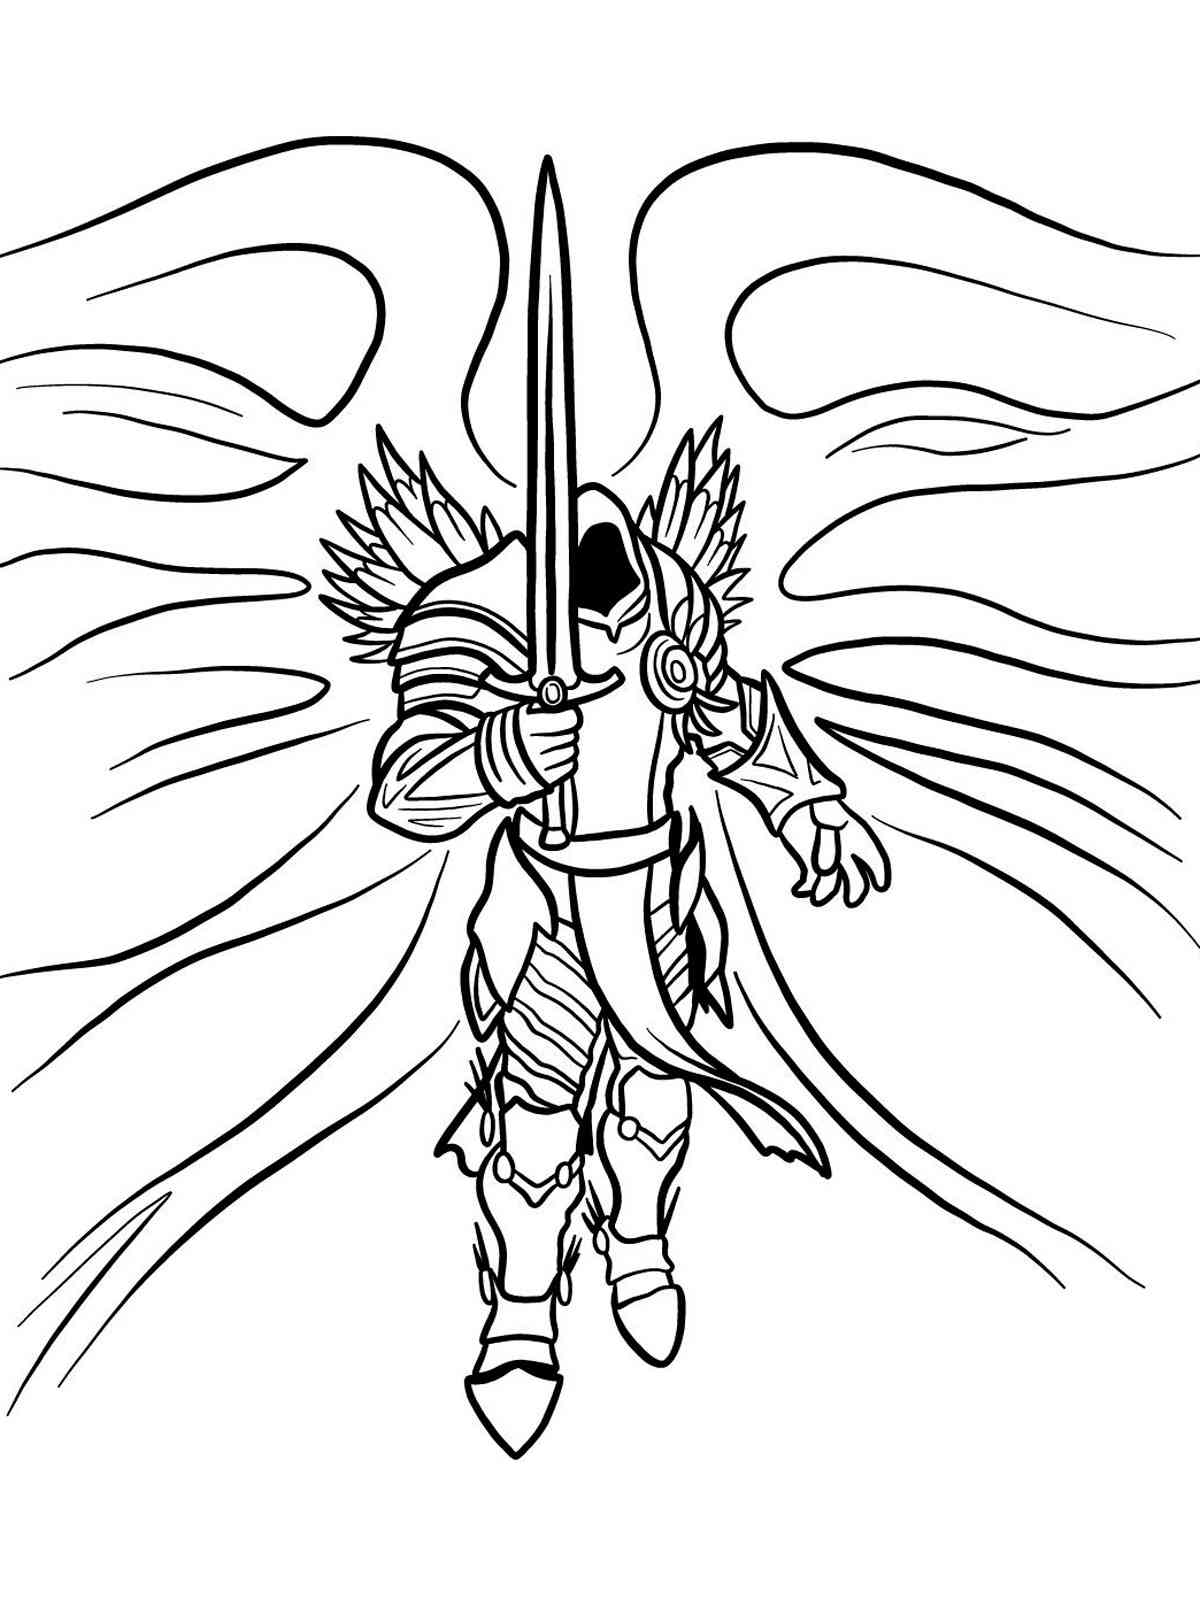 Diablo 1 coloring page